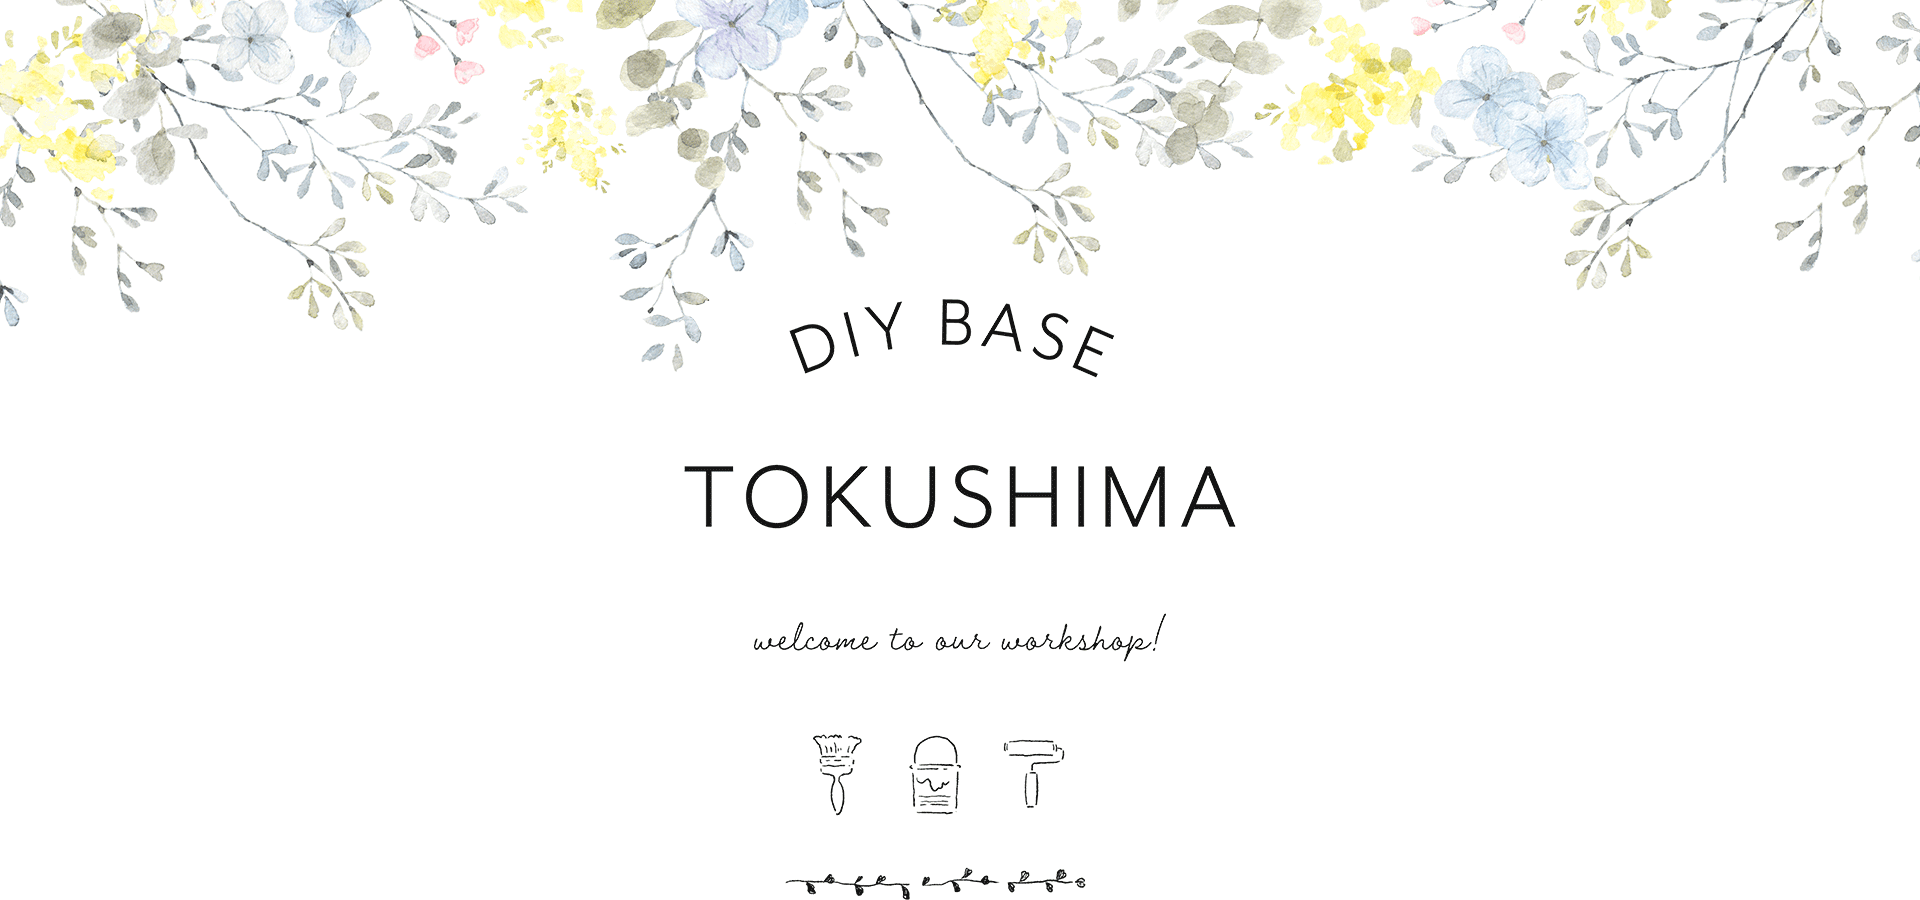 DIY BASE TOKUSHIMA